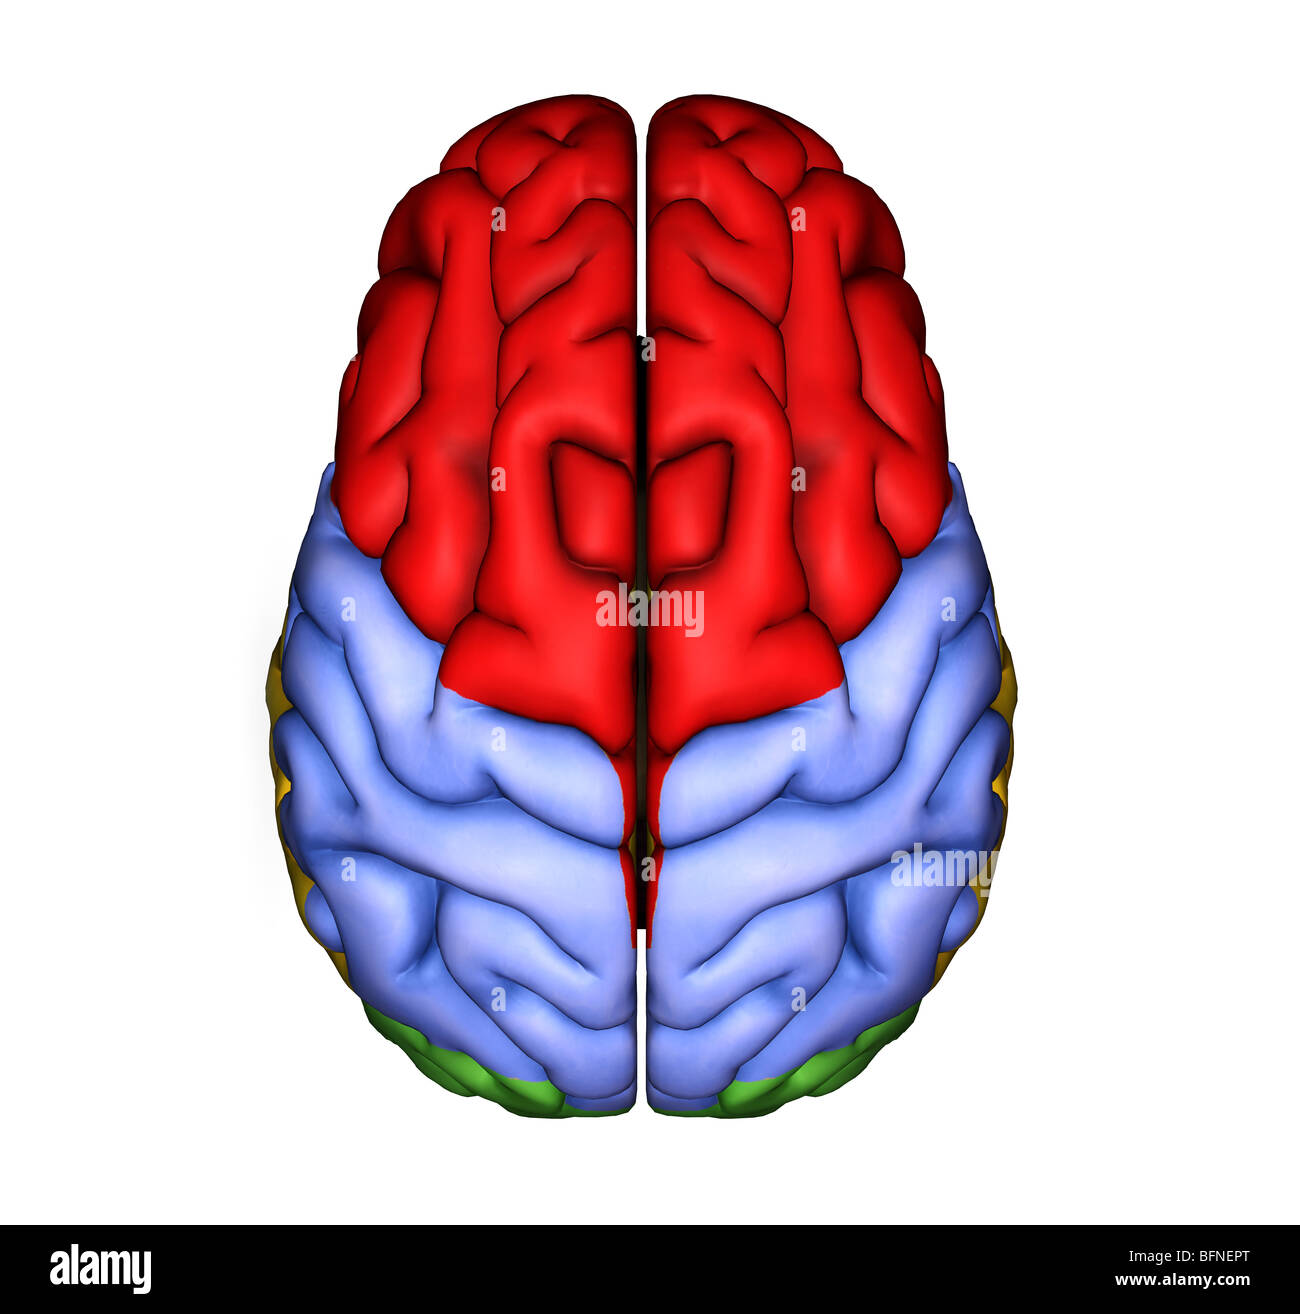 Illustrazione della superficie del cervello umano visto da sopra Foto Stock